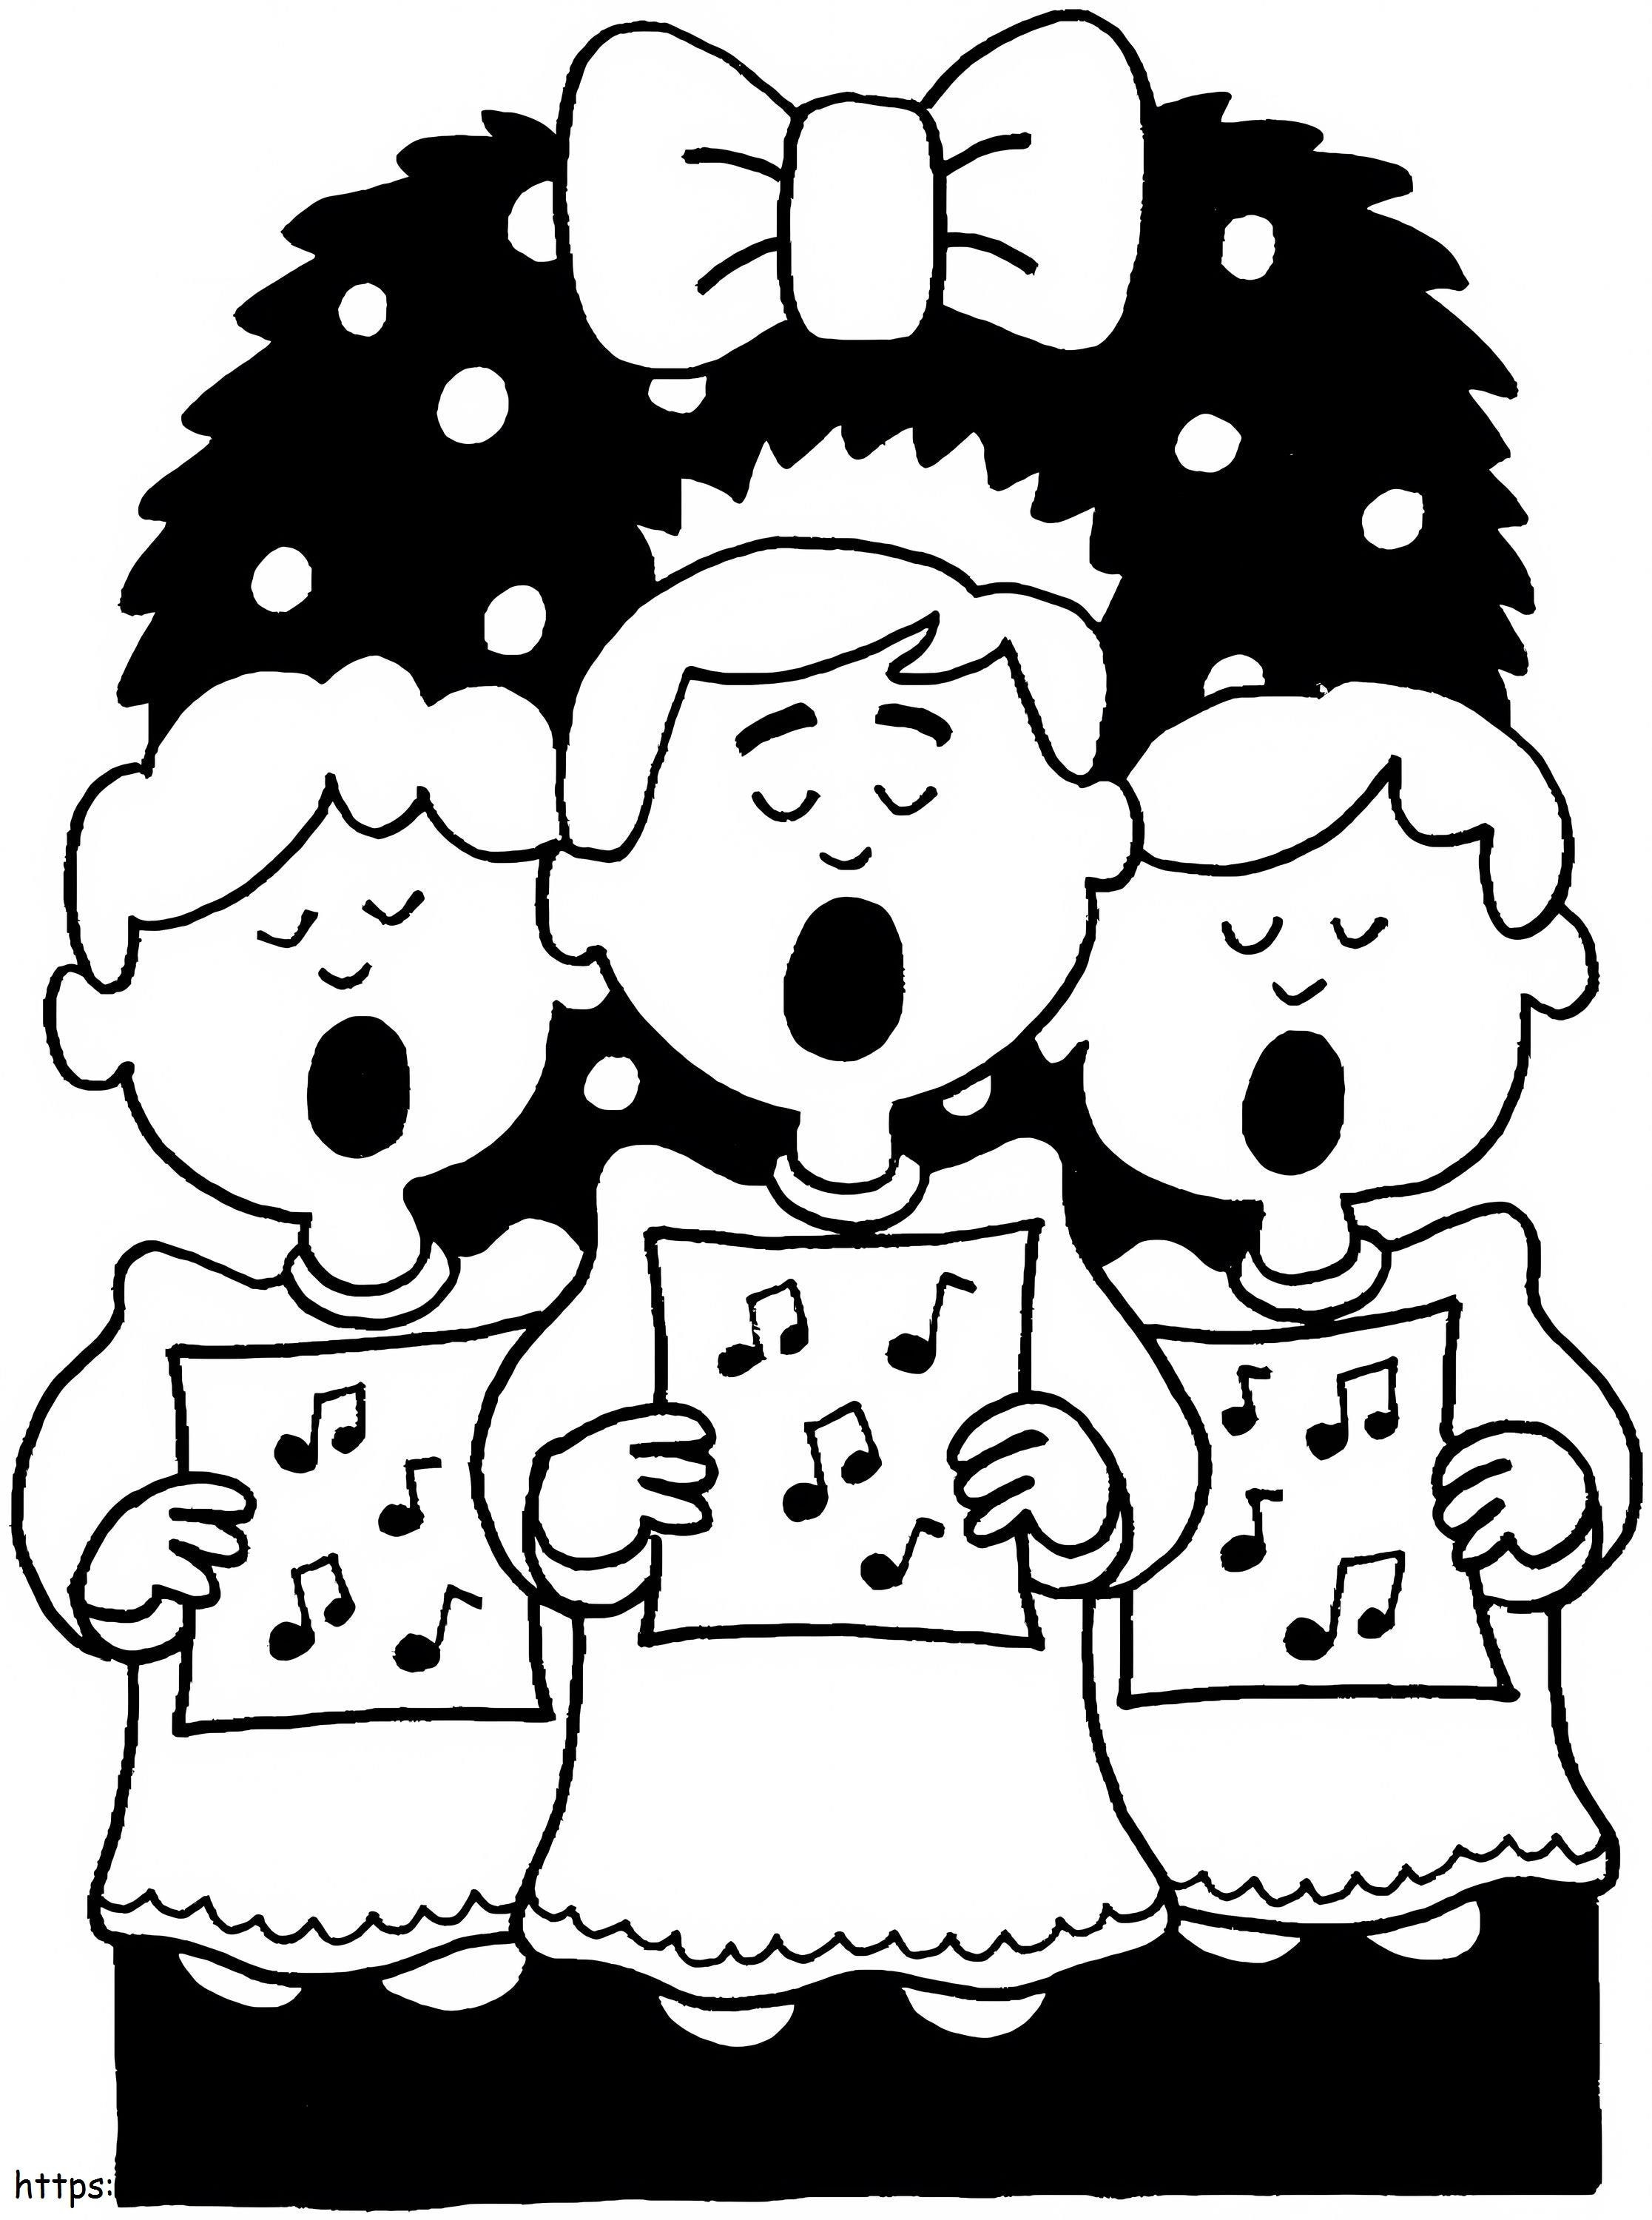 Śpiewanie piosenki świątecznej kolorowanka